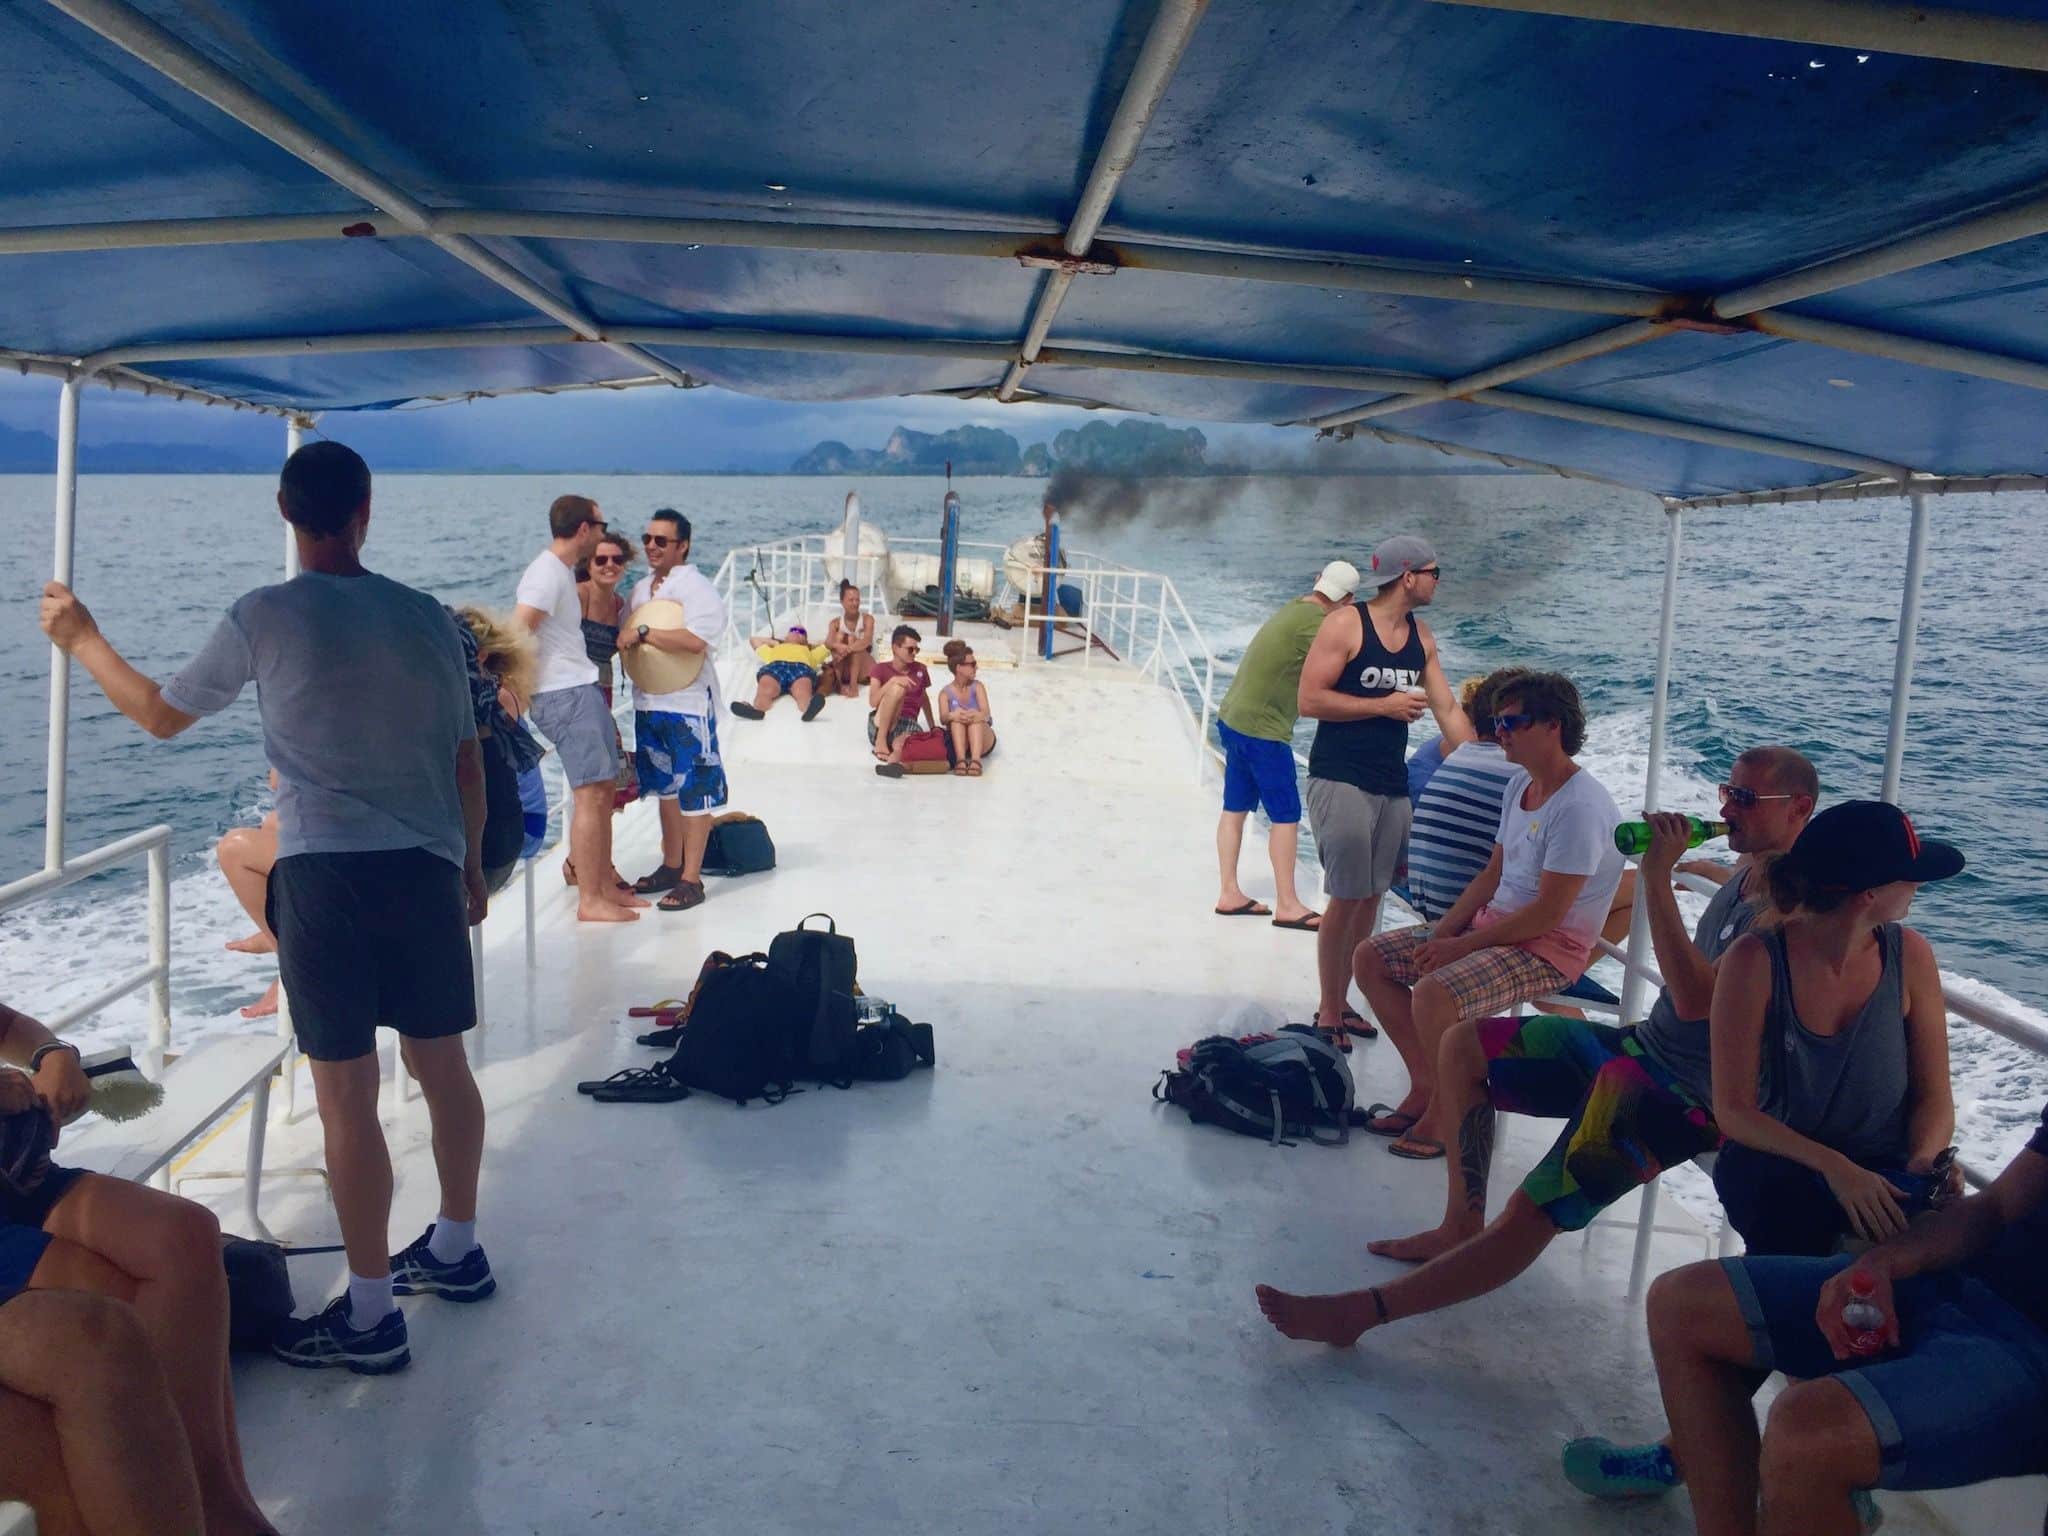 Cómo llegar a Koh Lipe: el viaje en el ferry convencional se convirtió en un viaje de terror de 12 horas. Mejor volar o tomar una lancha rápida. Foto: Sascha Tegtmeyer